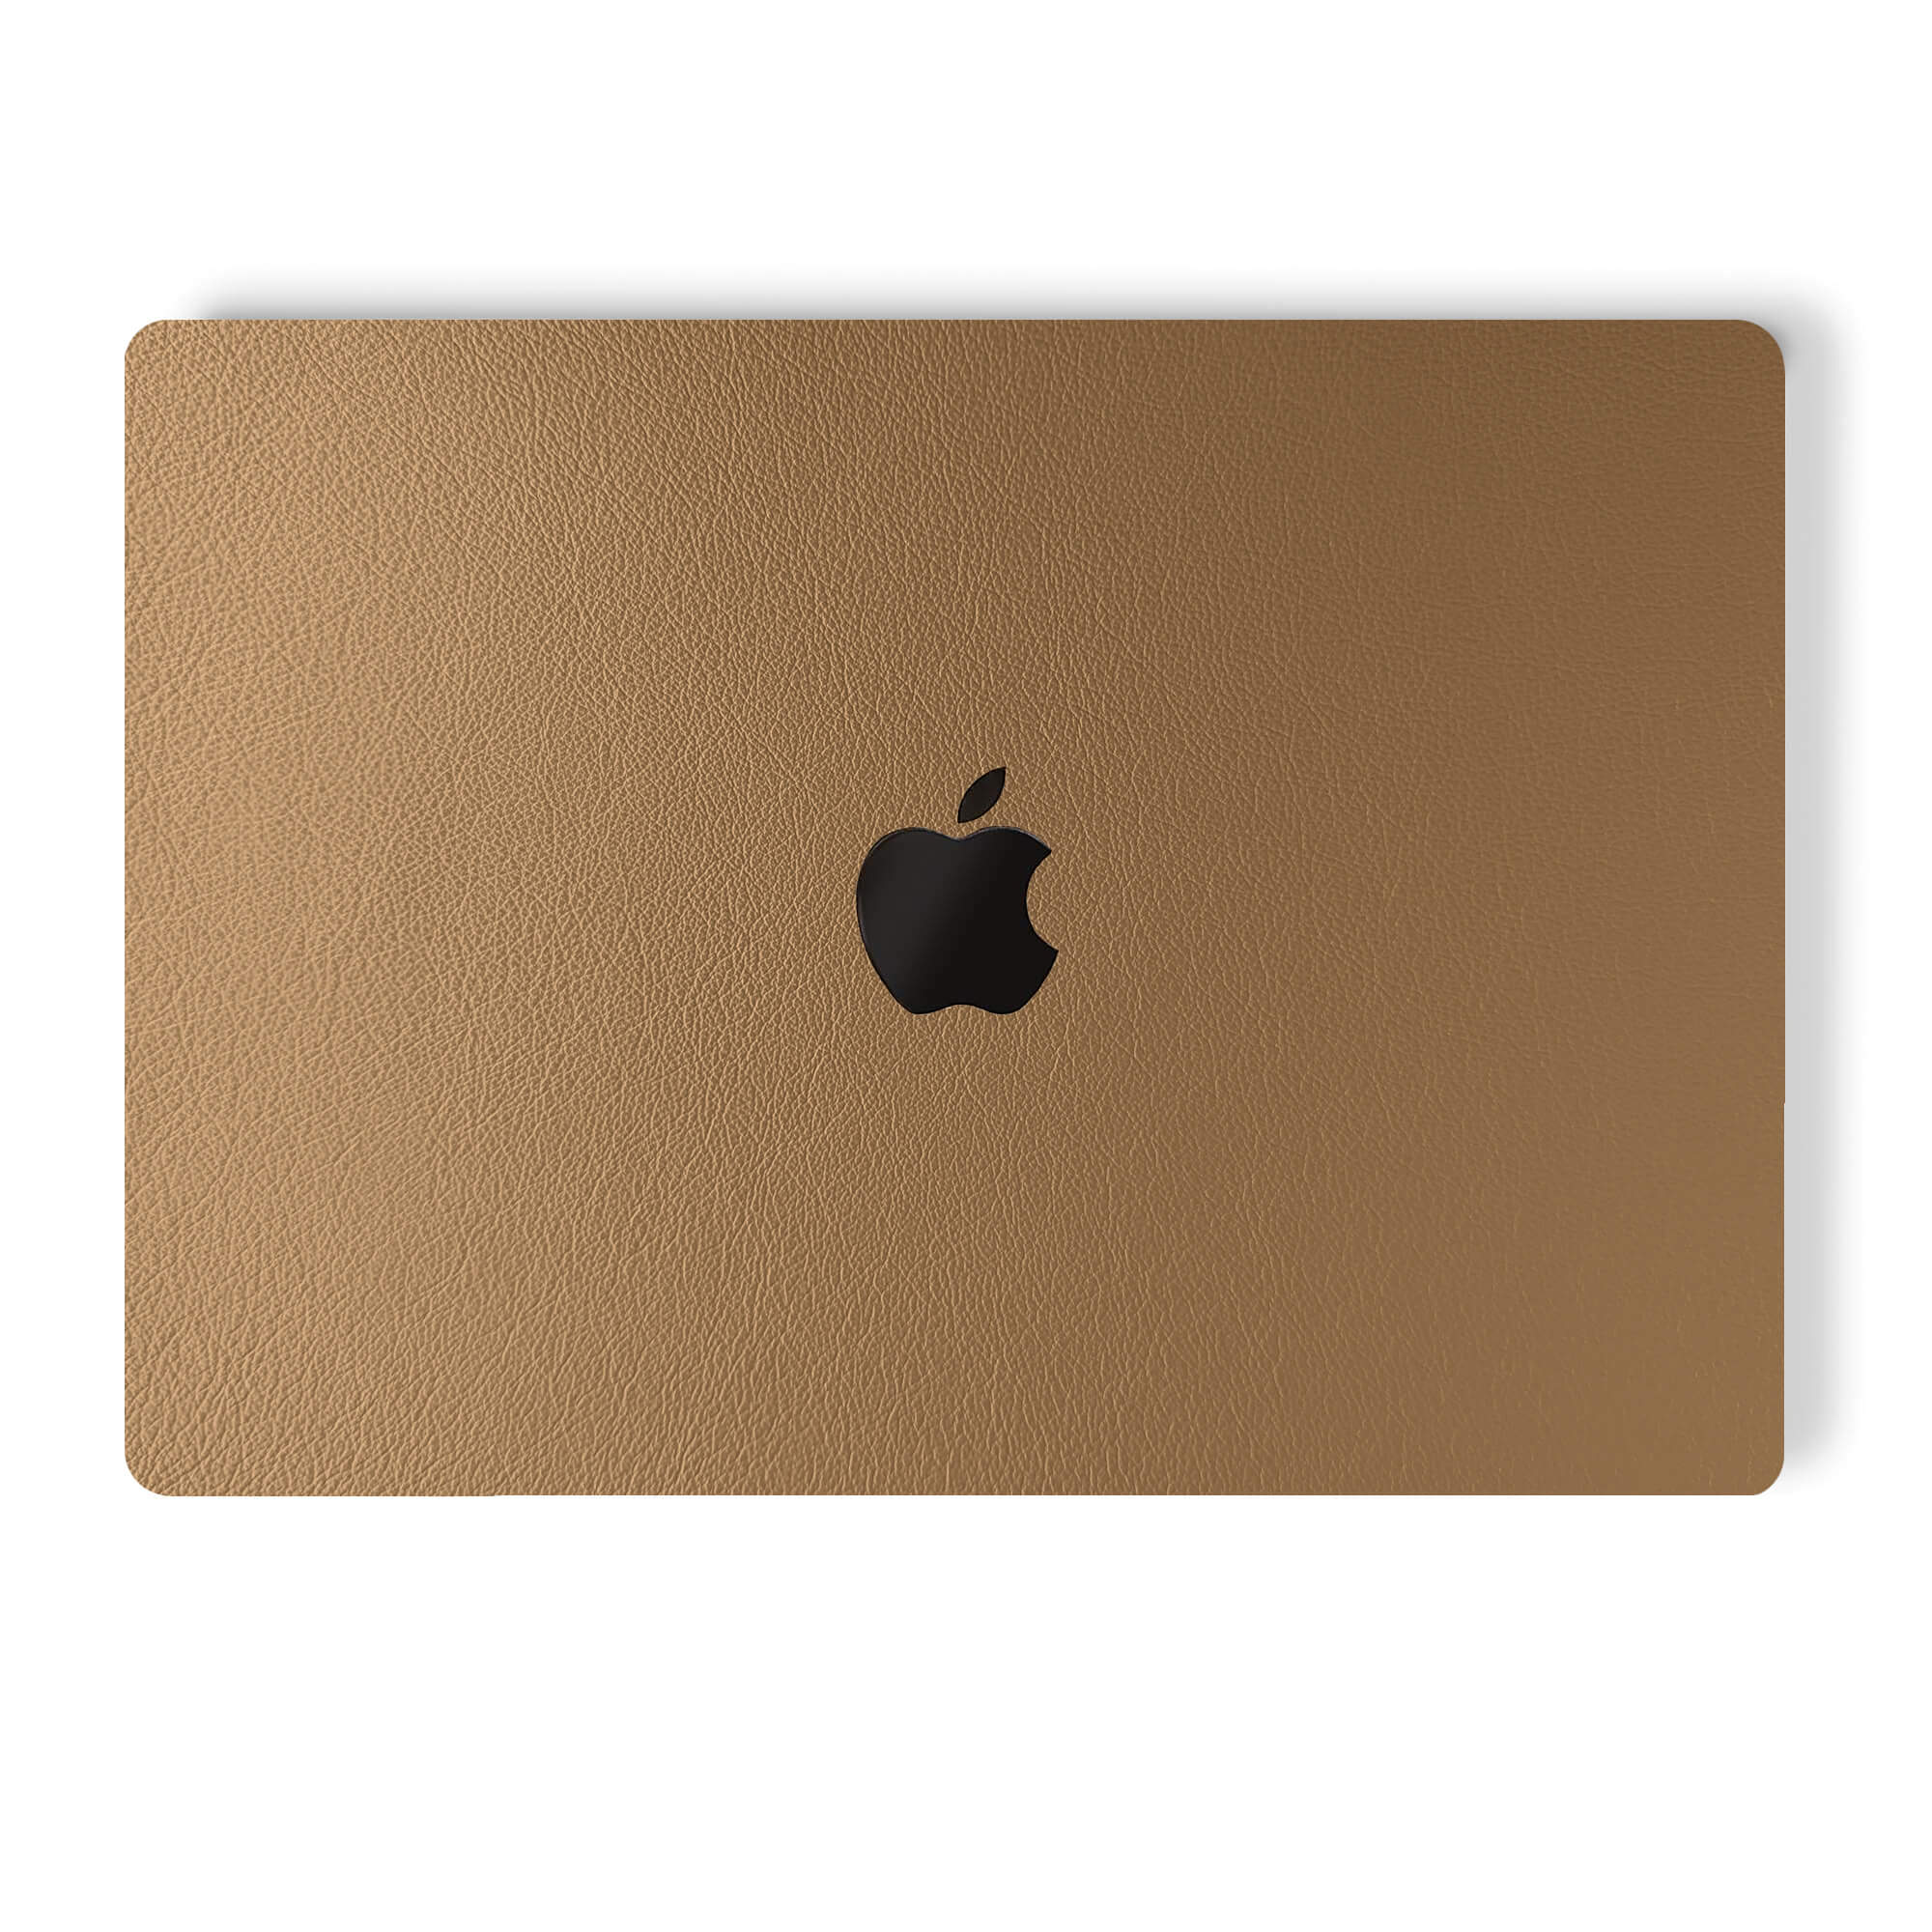 alt:Leather MacBook Skin| var:latte |, LLA-MB-Pro16, LLA-MB-Pro15, LLA-MB-Pro1320, LLA-MB-Air20, LLA-MB-Ret15, LLA-MB-Ret13, LLA-MB-Air13, LLA-MB-12